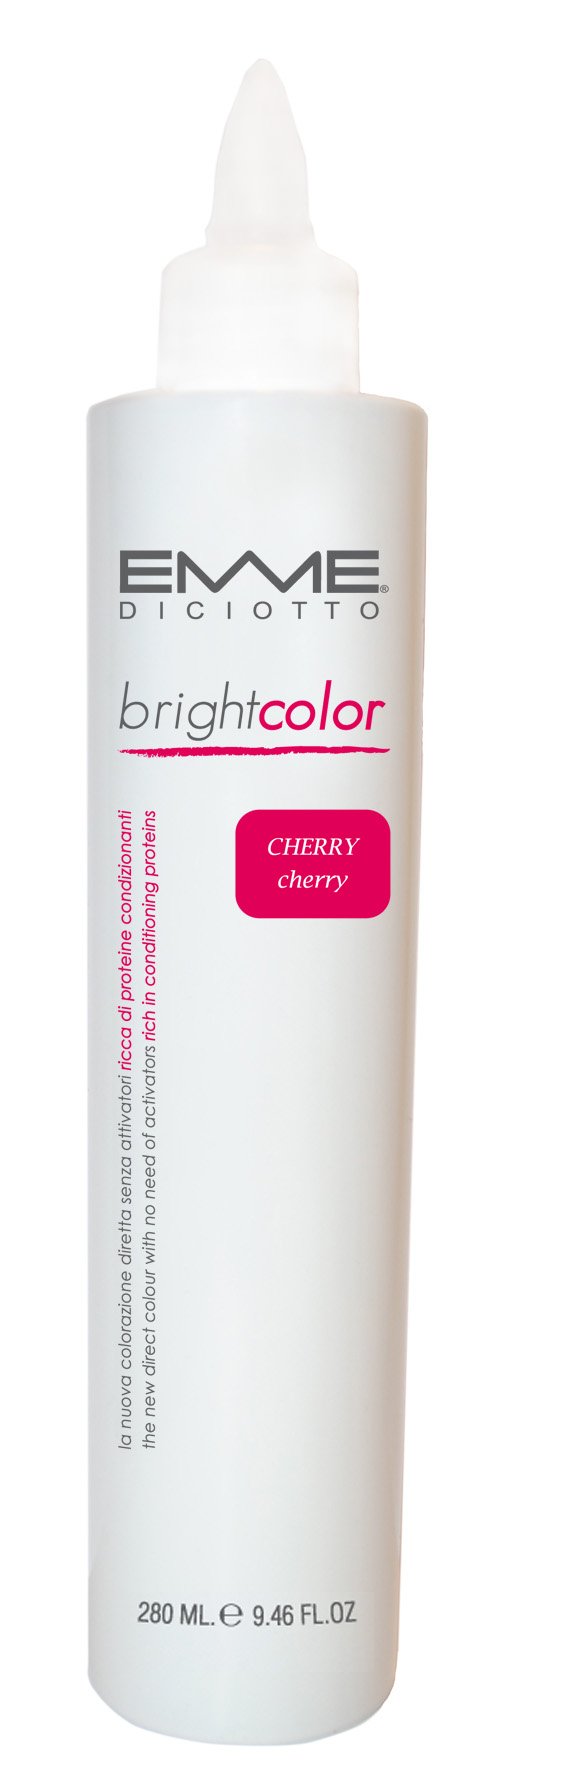 Brightcolor Cherry